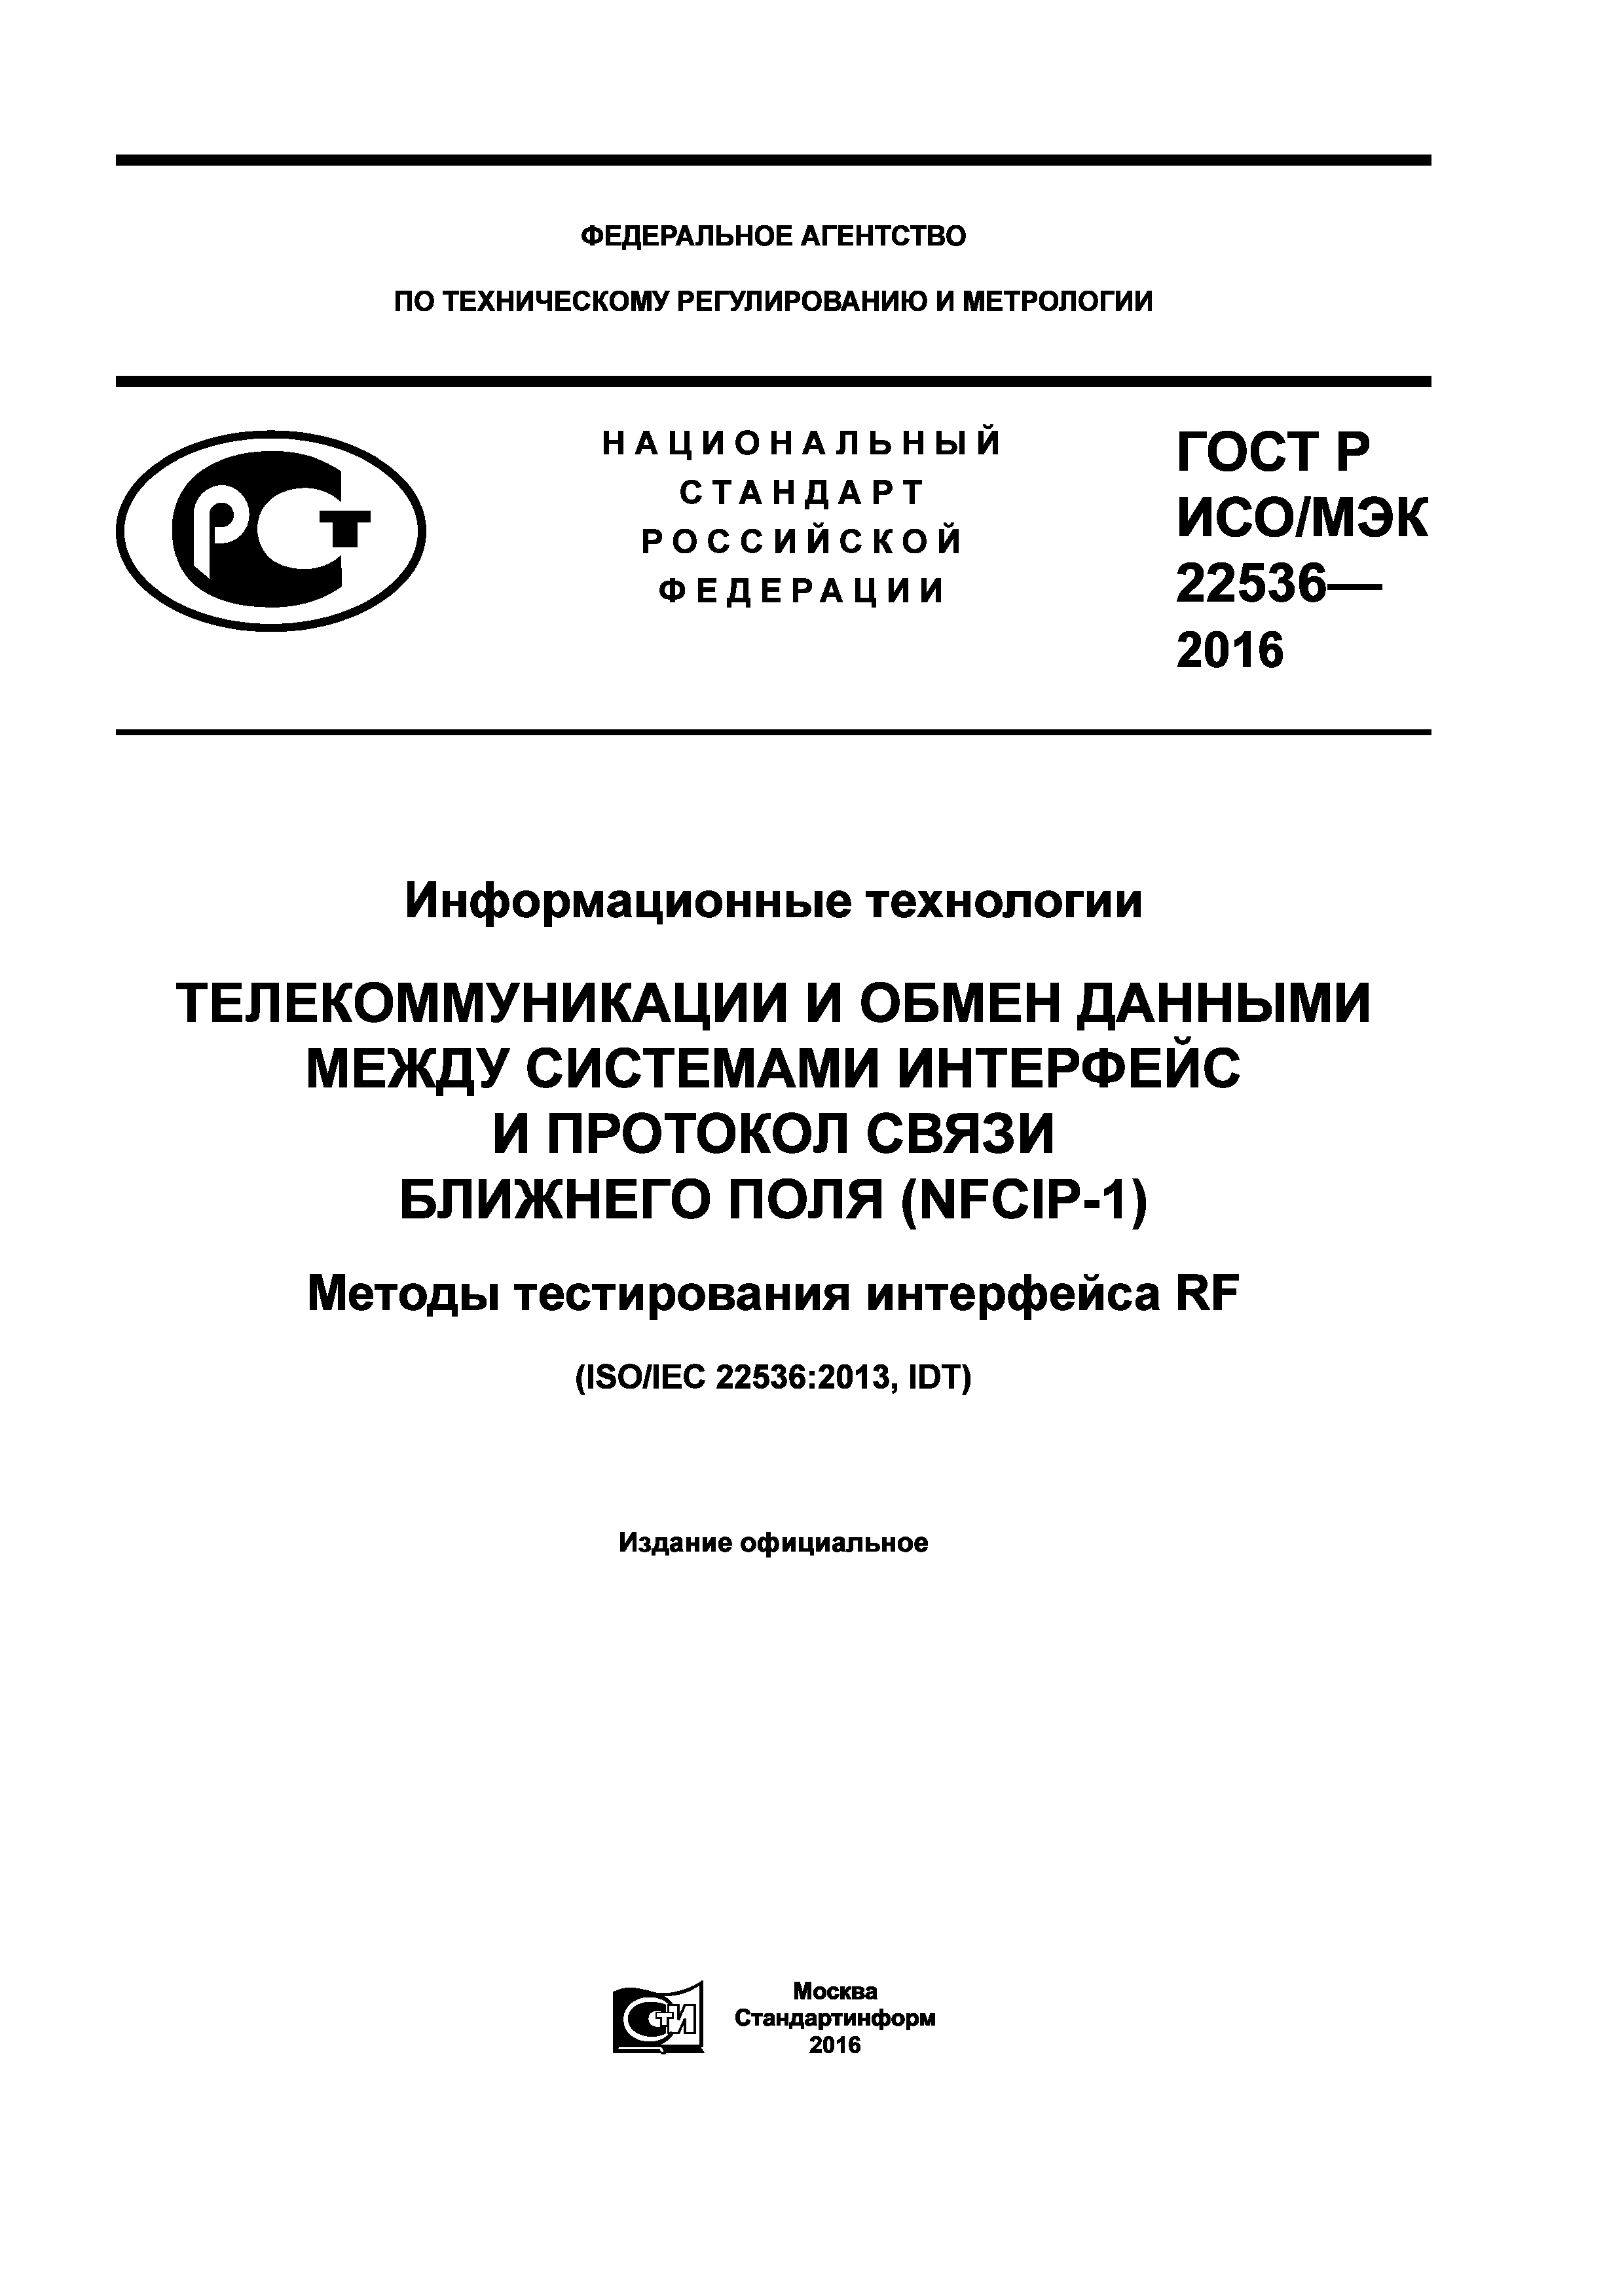 ГОСТ Р ИСО/МЭК 22536-2016